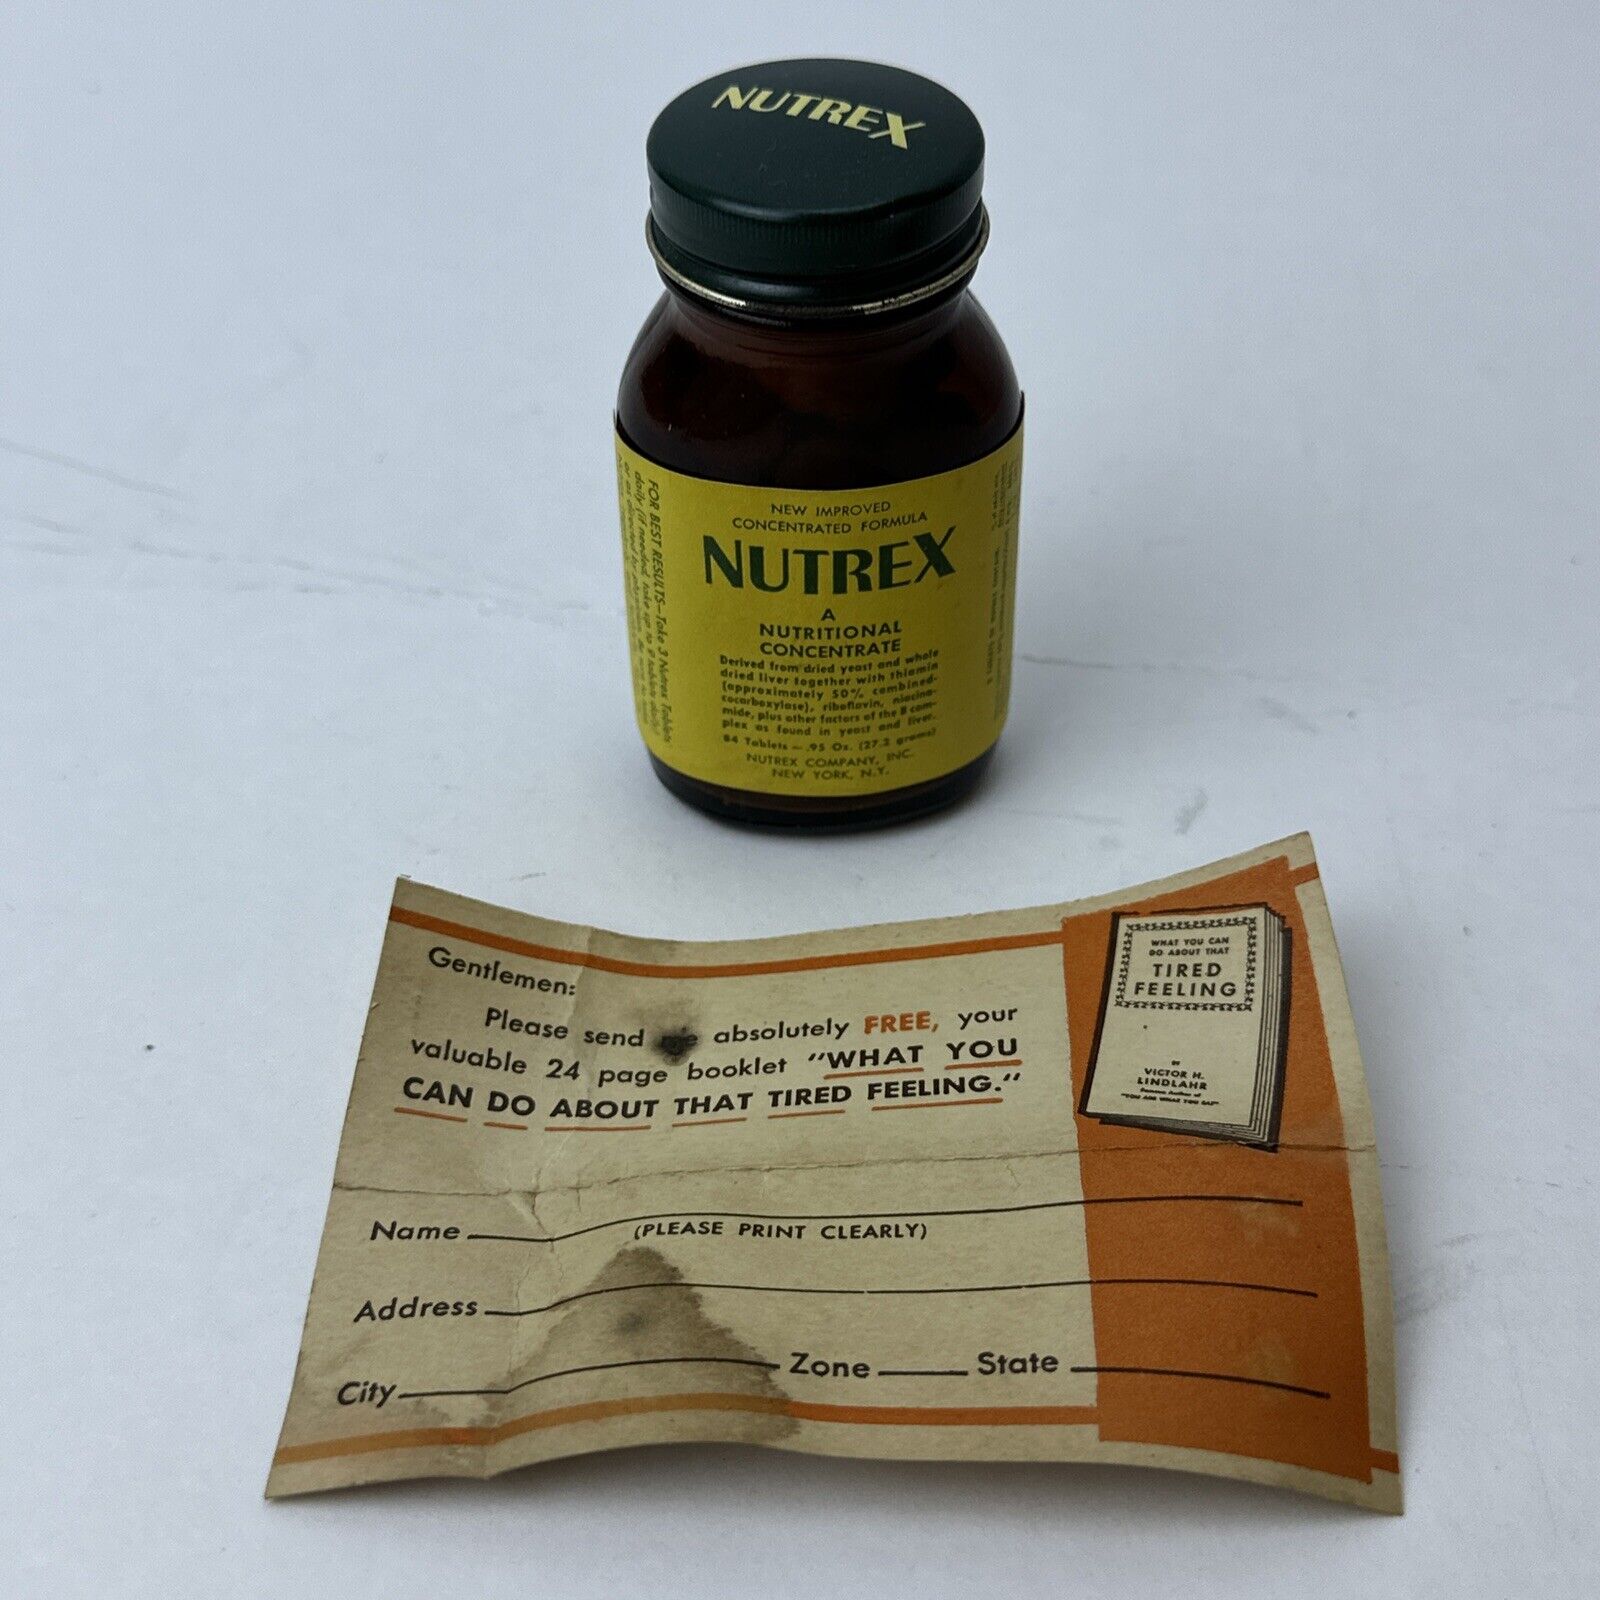 Vintage Nutrex Glass Bottle Unopened Nutritional Concentrate .95 Oz 84 Tablets